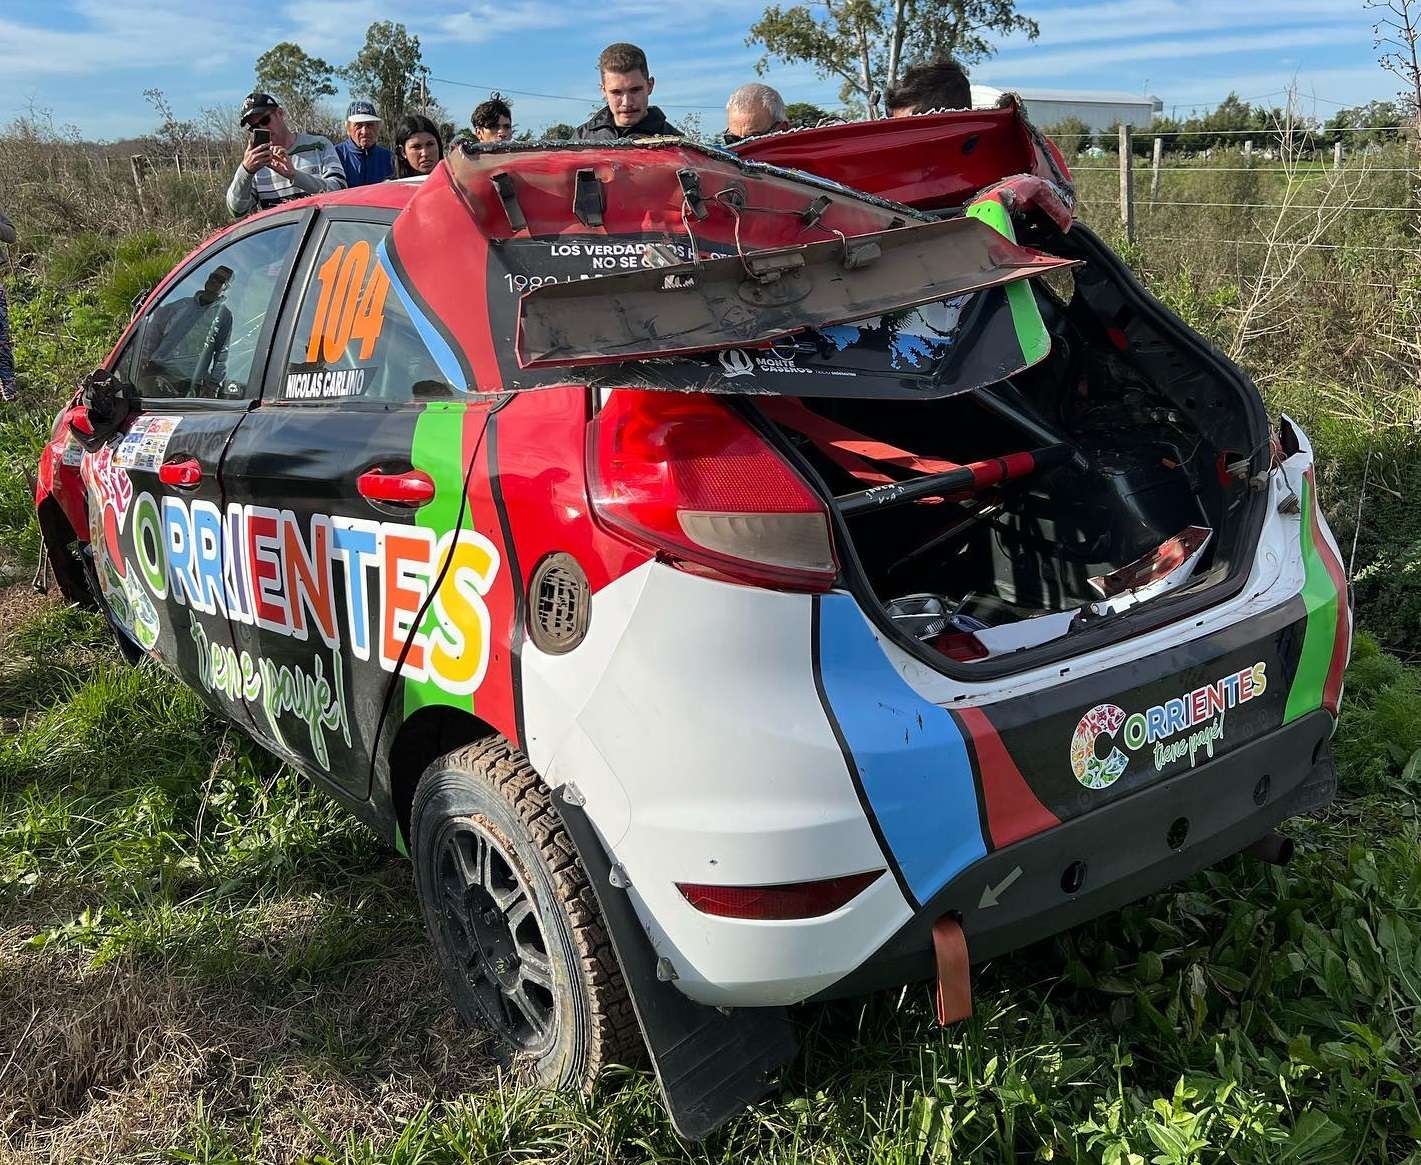 Espectacular vuelco en el Rally Entrerriano: su auto dio 8 vueltas y el piloto salió caminando